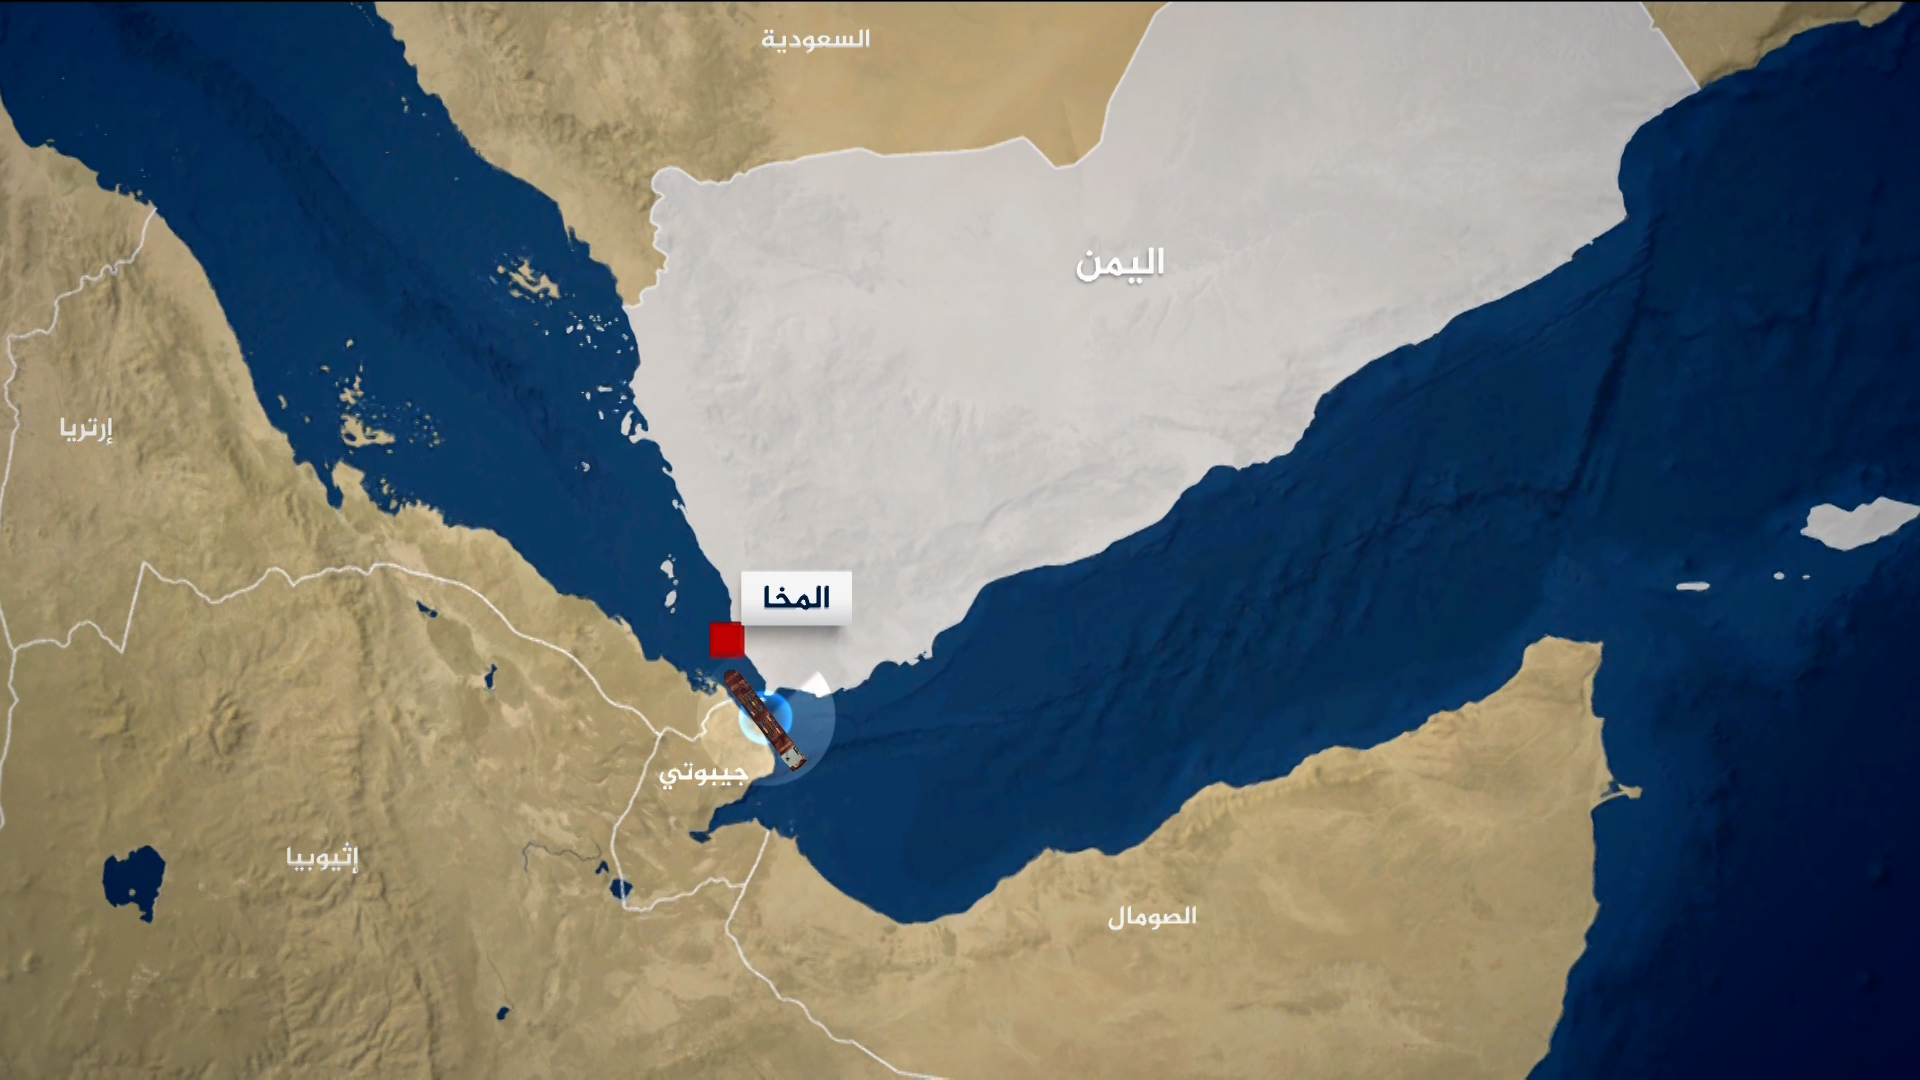 هيئة بحرية بريطانية: انفجار محتمل قرب سفينة جنوب ميناء المخا اليمني | أخبار – البوكس نيوز